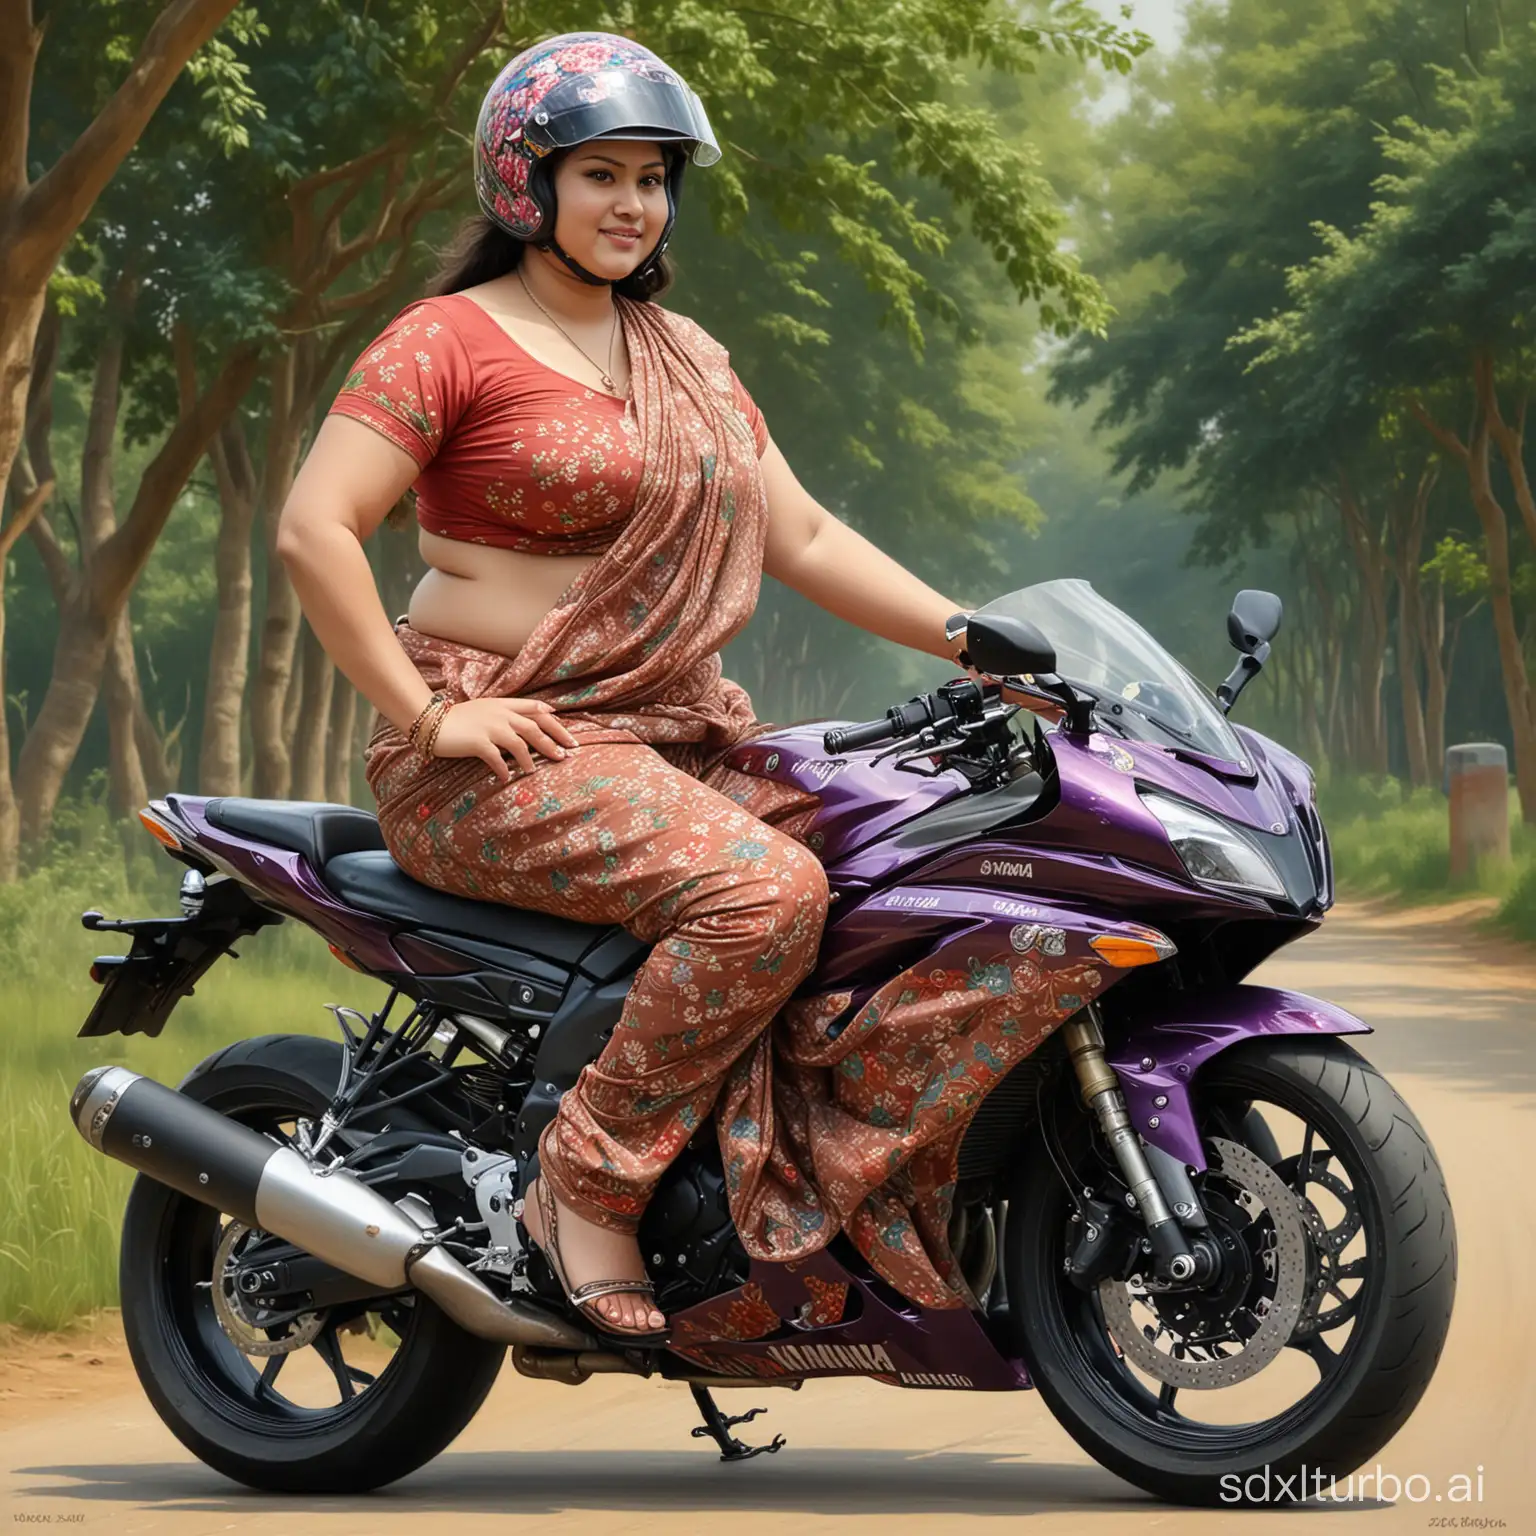 Floral-SareeClad-Woman-in-Helmet-Riding-Yamaha-R15